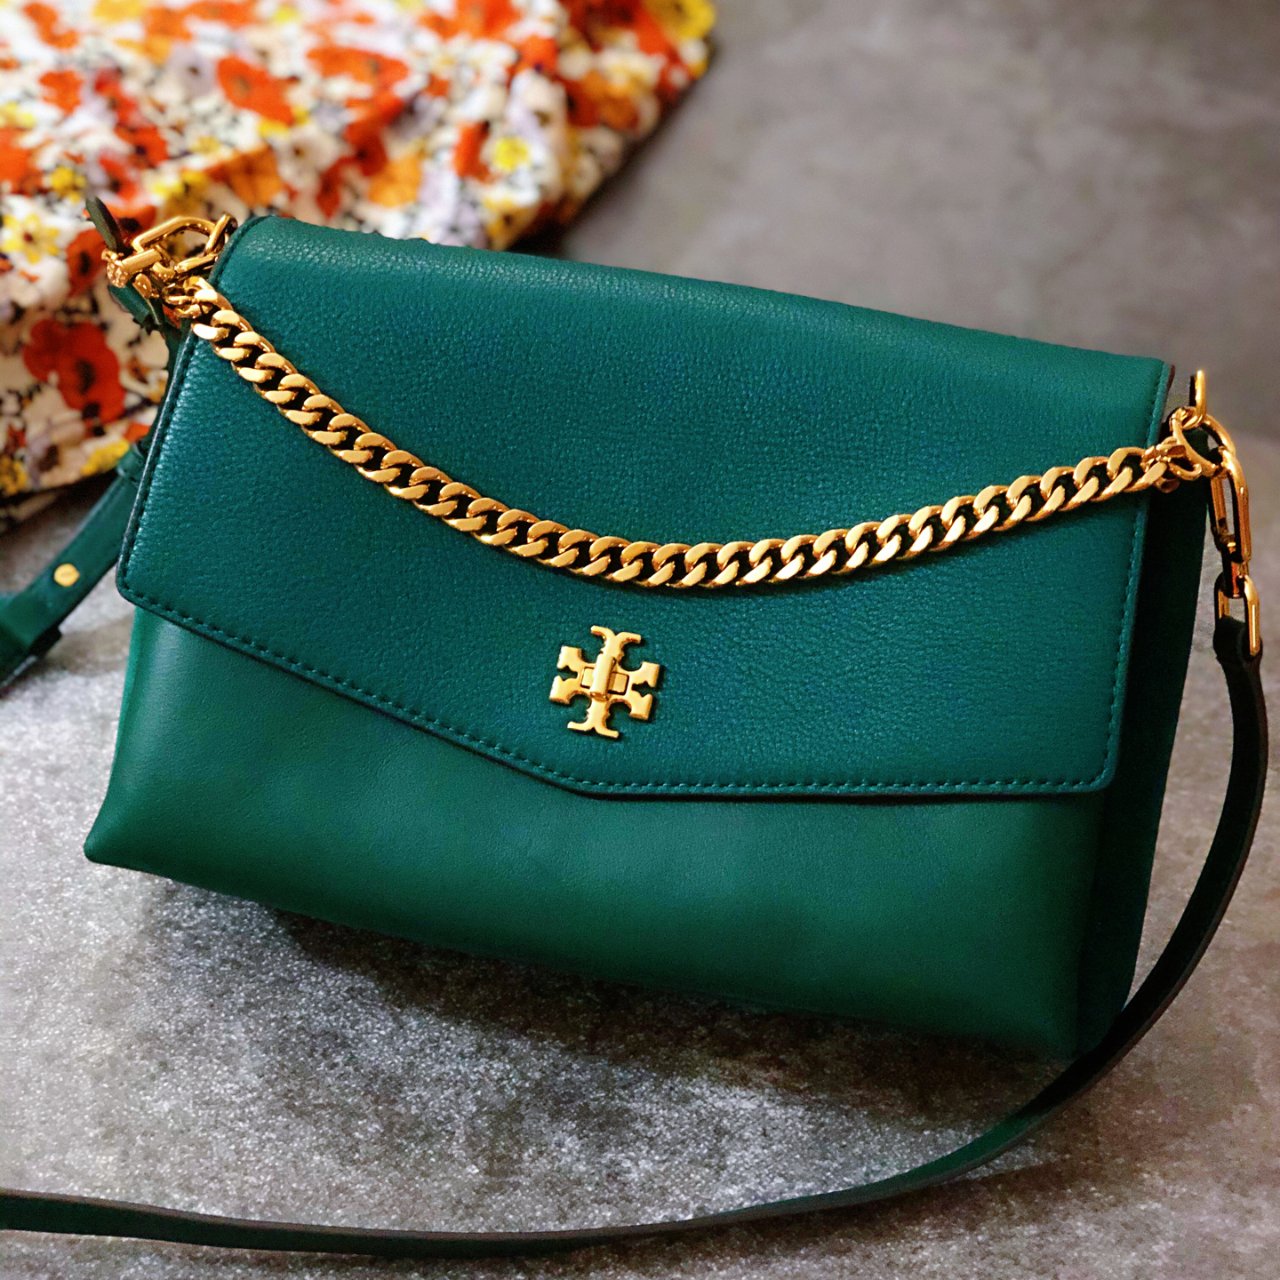 颜色超美的绿色包包...